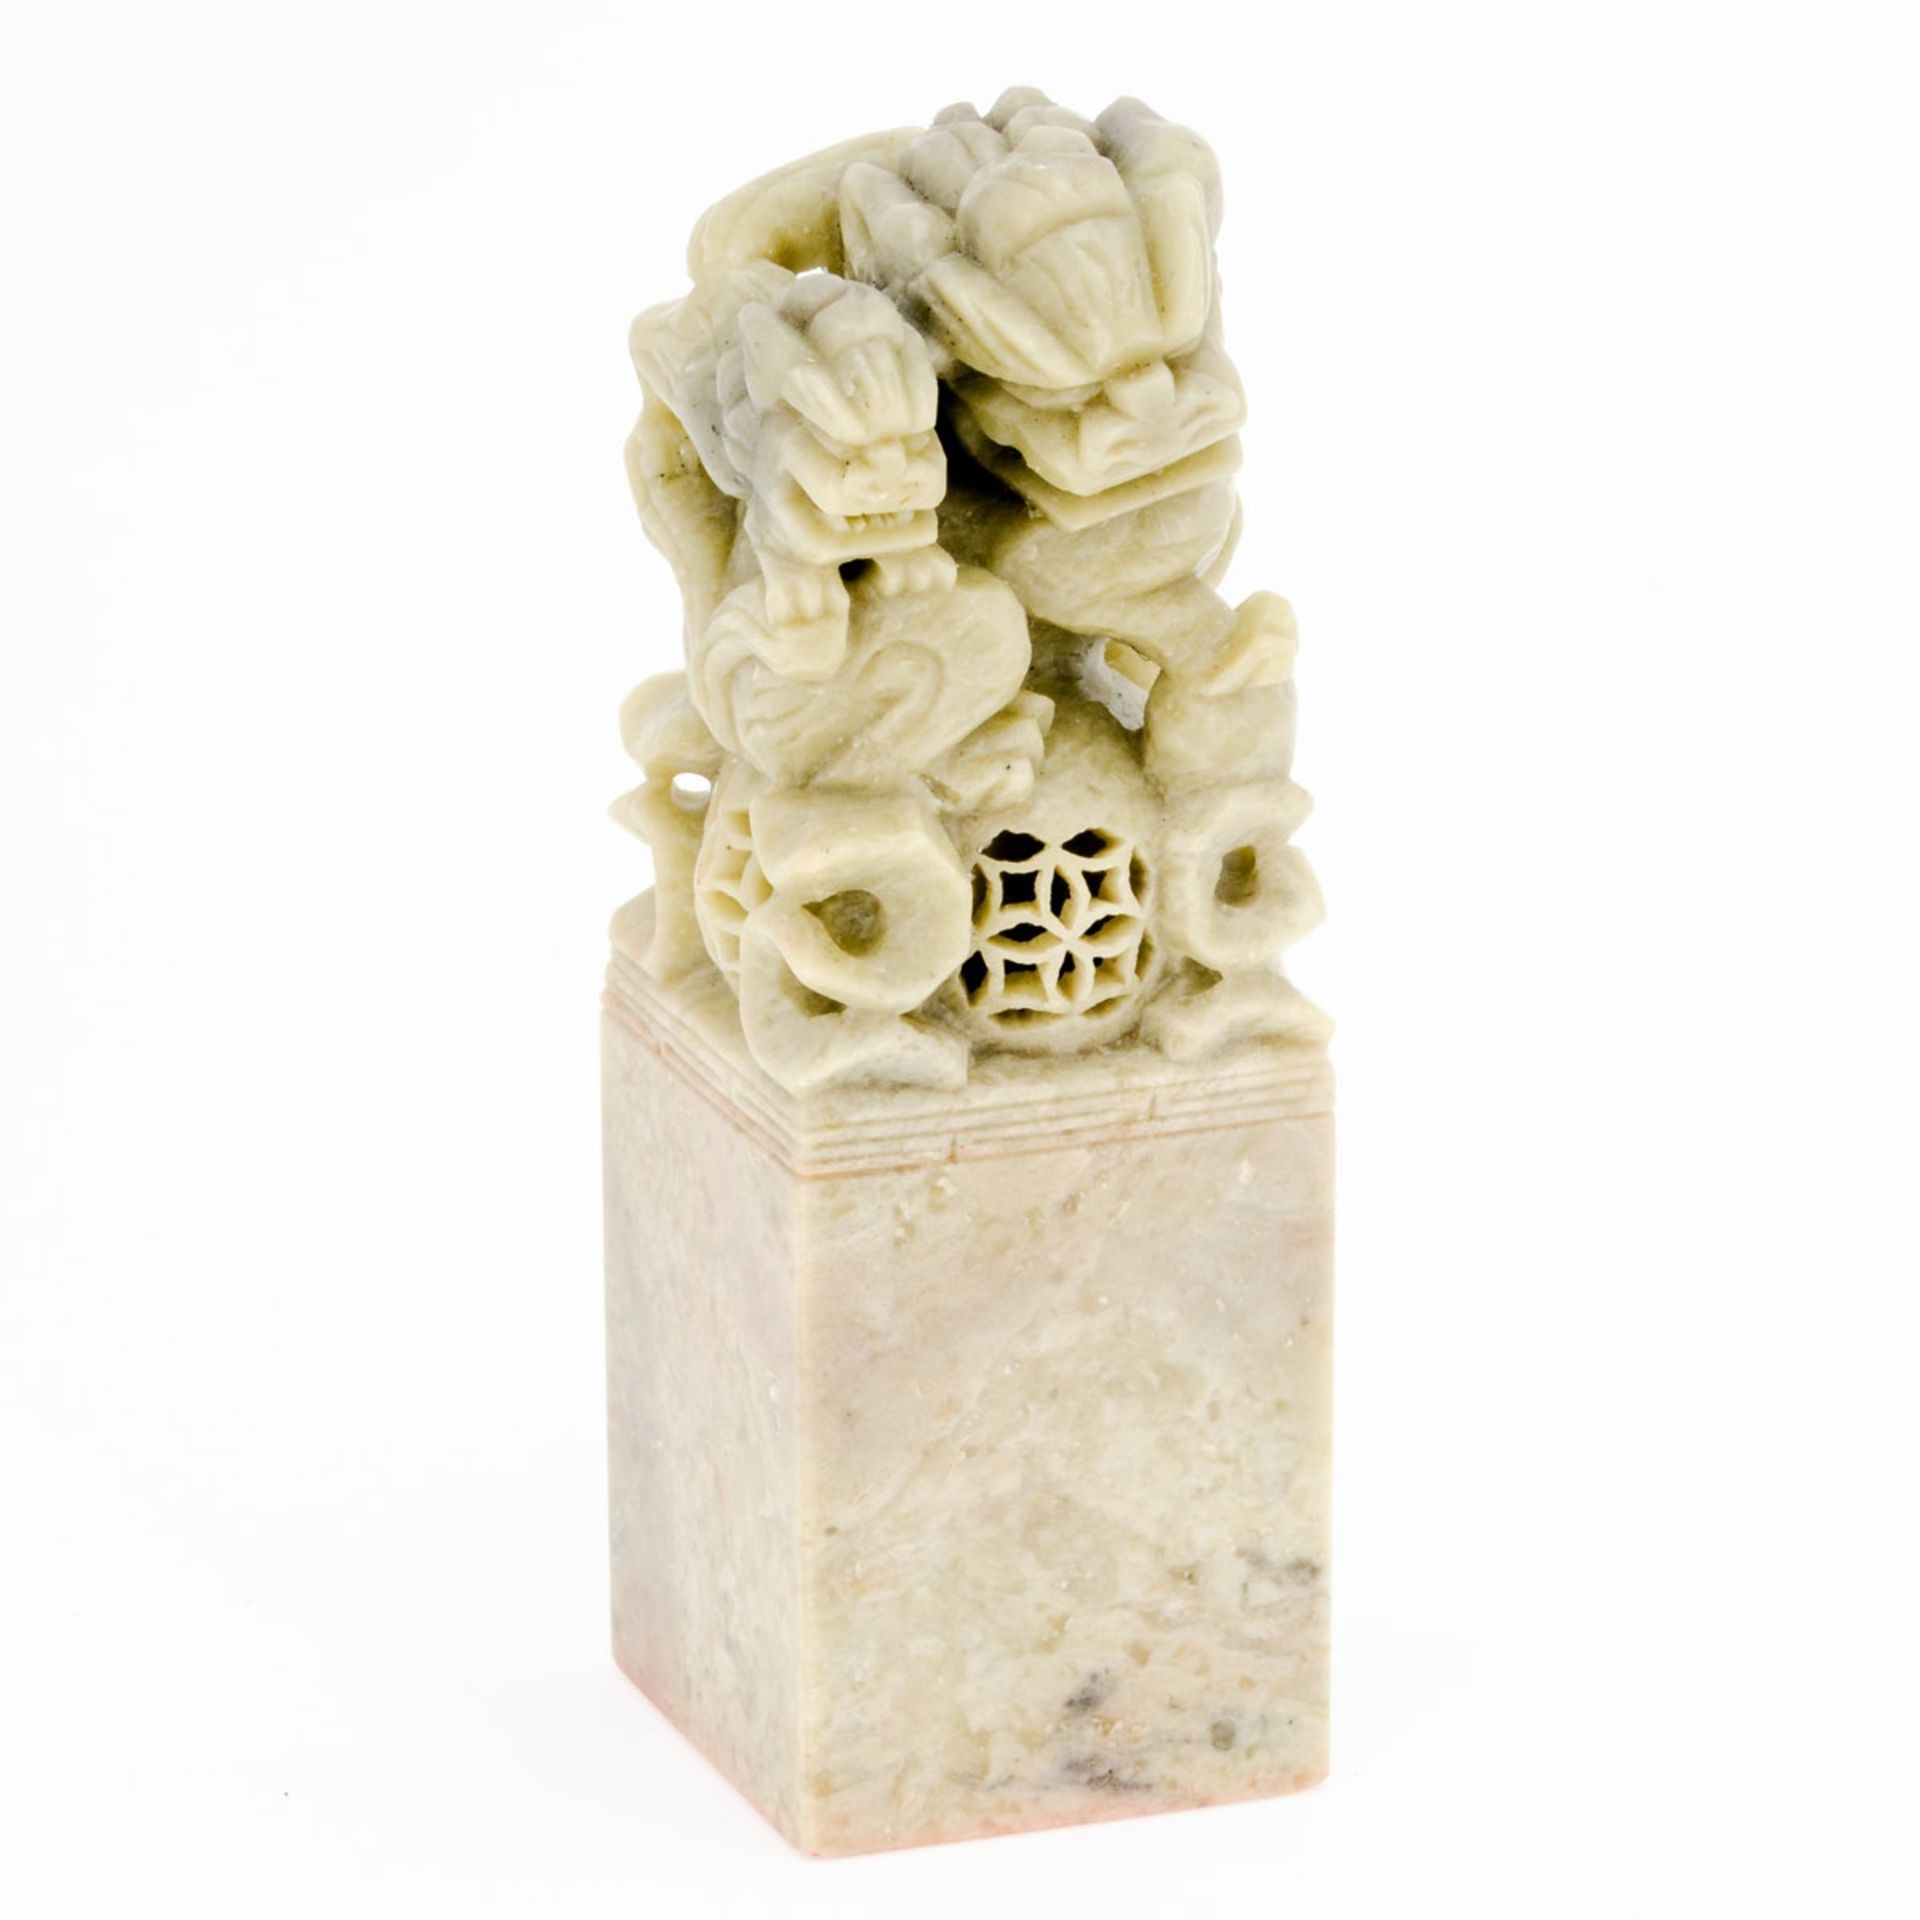 Siegelstempel China, 20. Jahrhundert. Speckstein. H. 11,8 cm. Seladonfarbener Speckstein mit